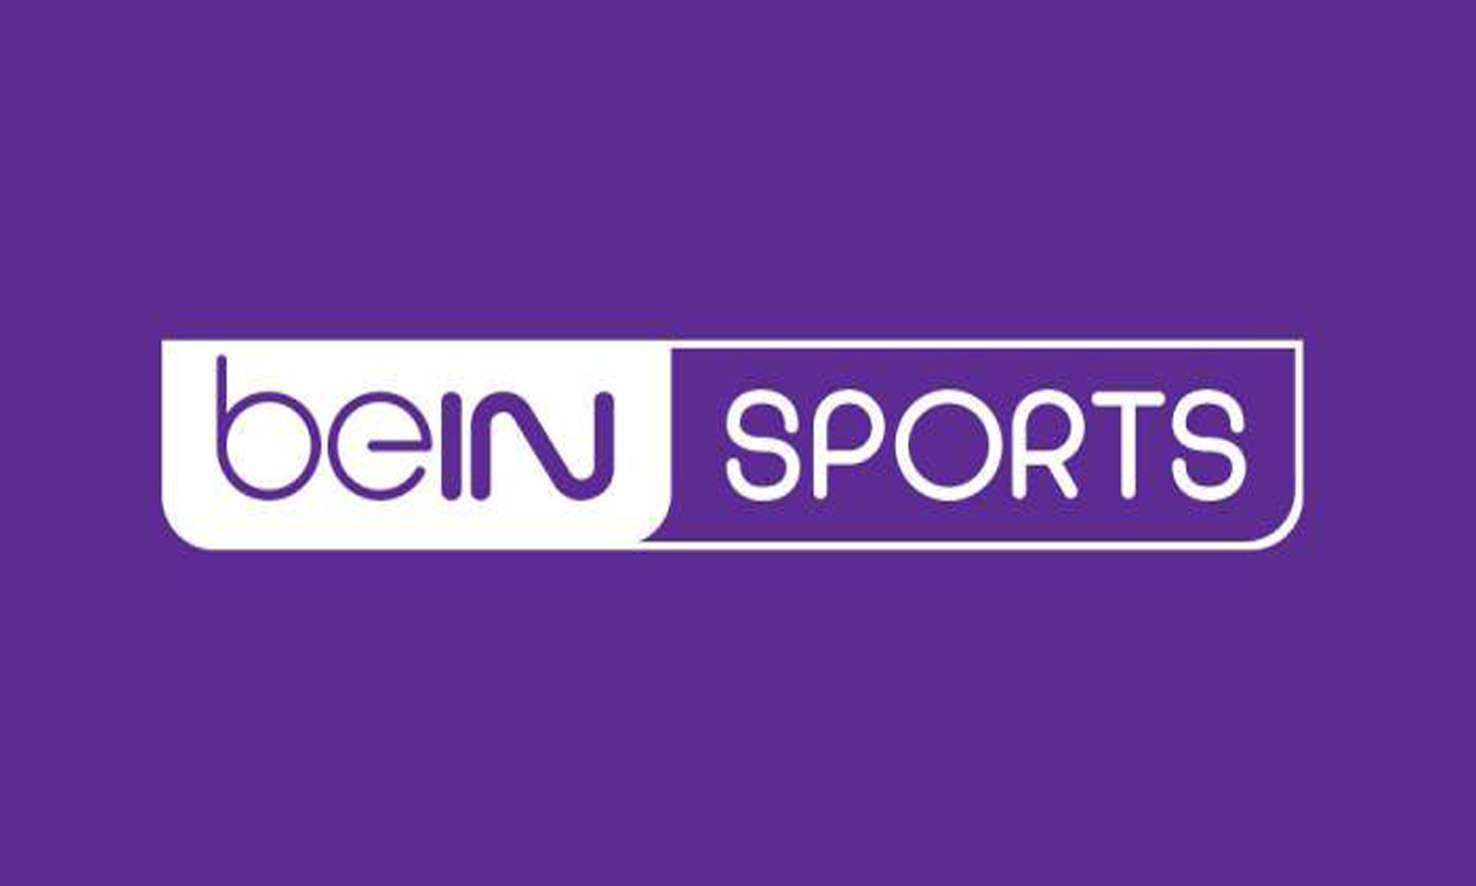 تردد قنوات بي ان سبورت Bein Sports على الأقمار الصناعية المختلفة لمتابعة المباريات العالمية والمحلية